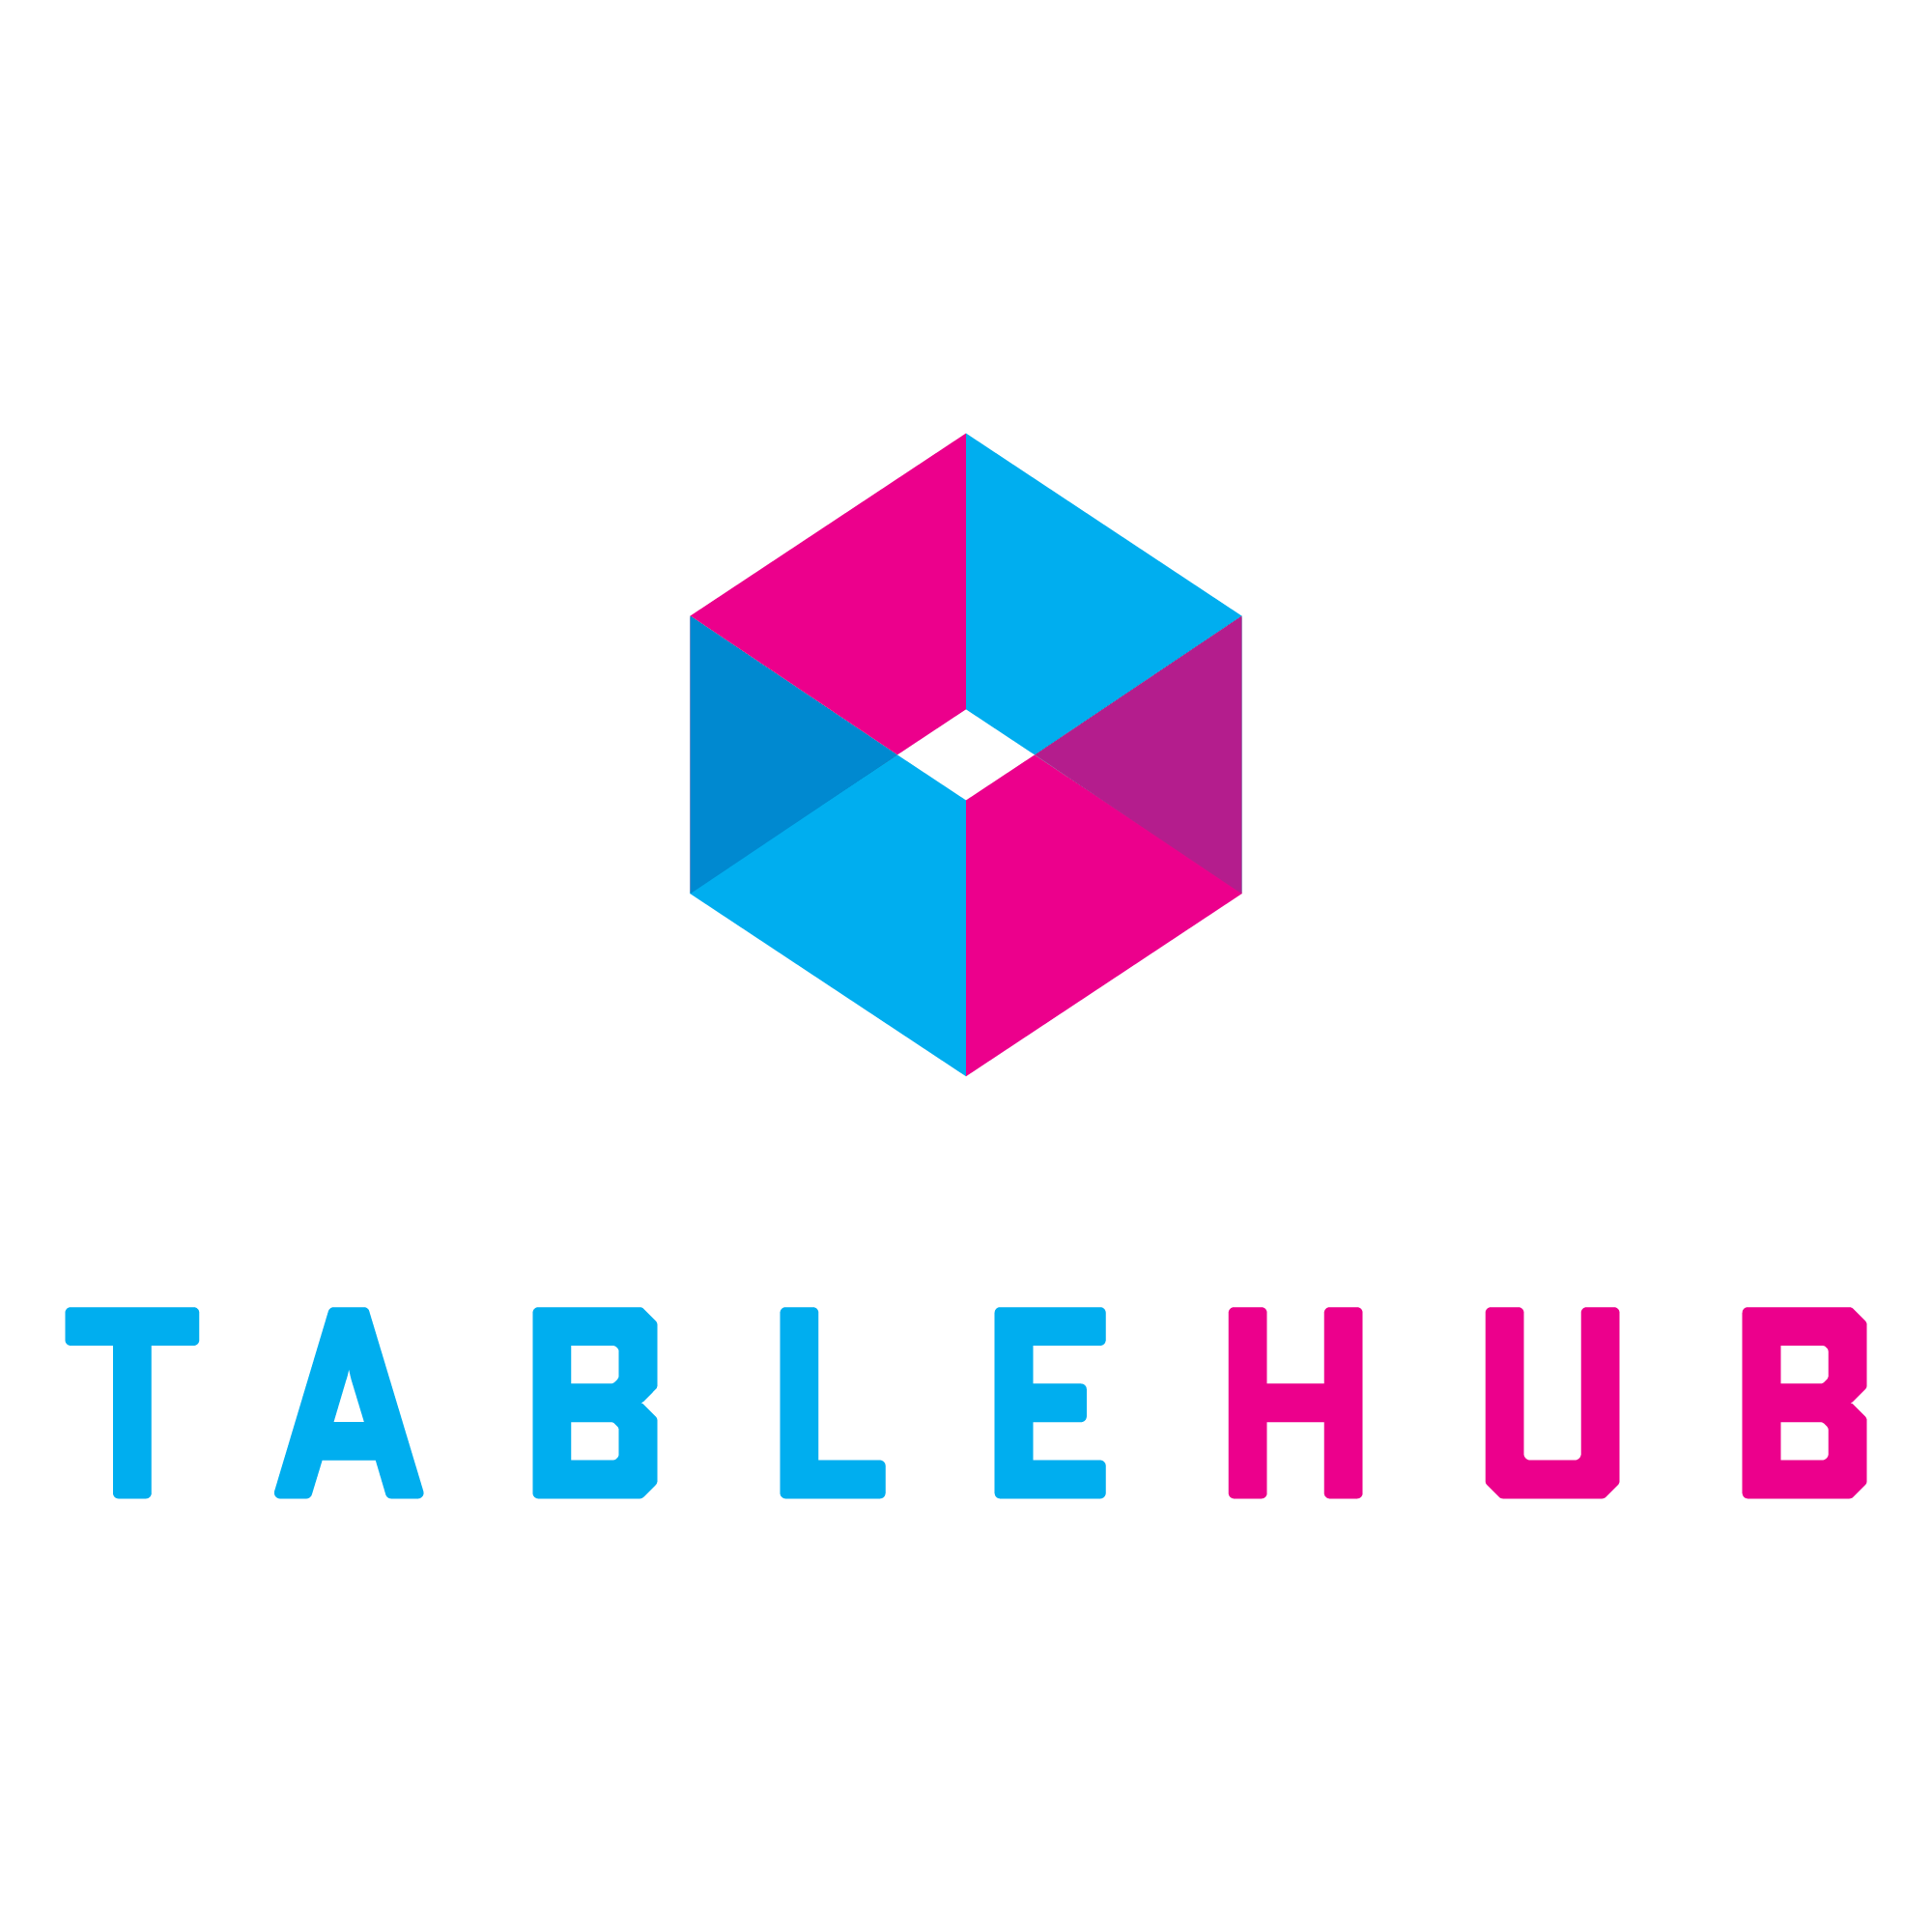 
TableHub Ltd